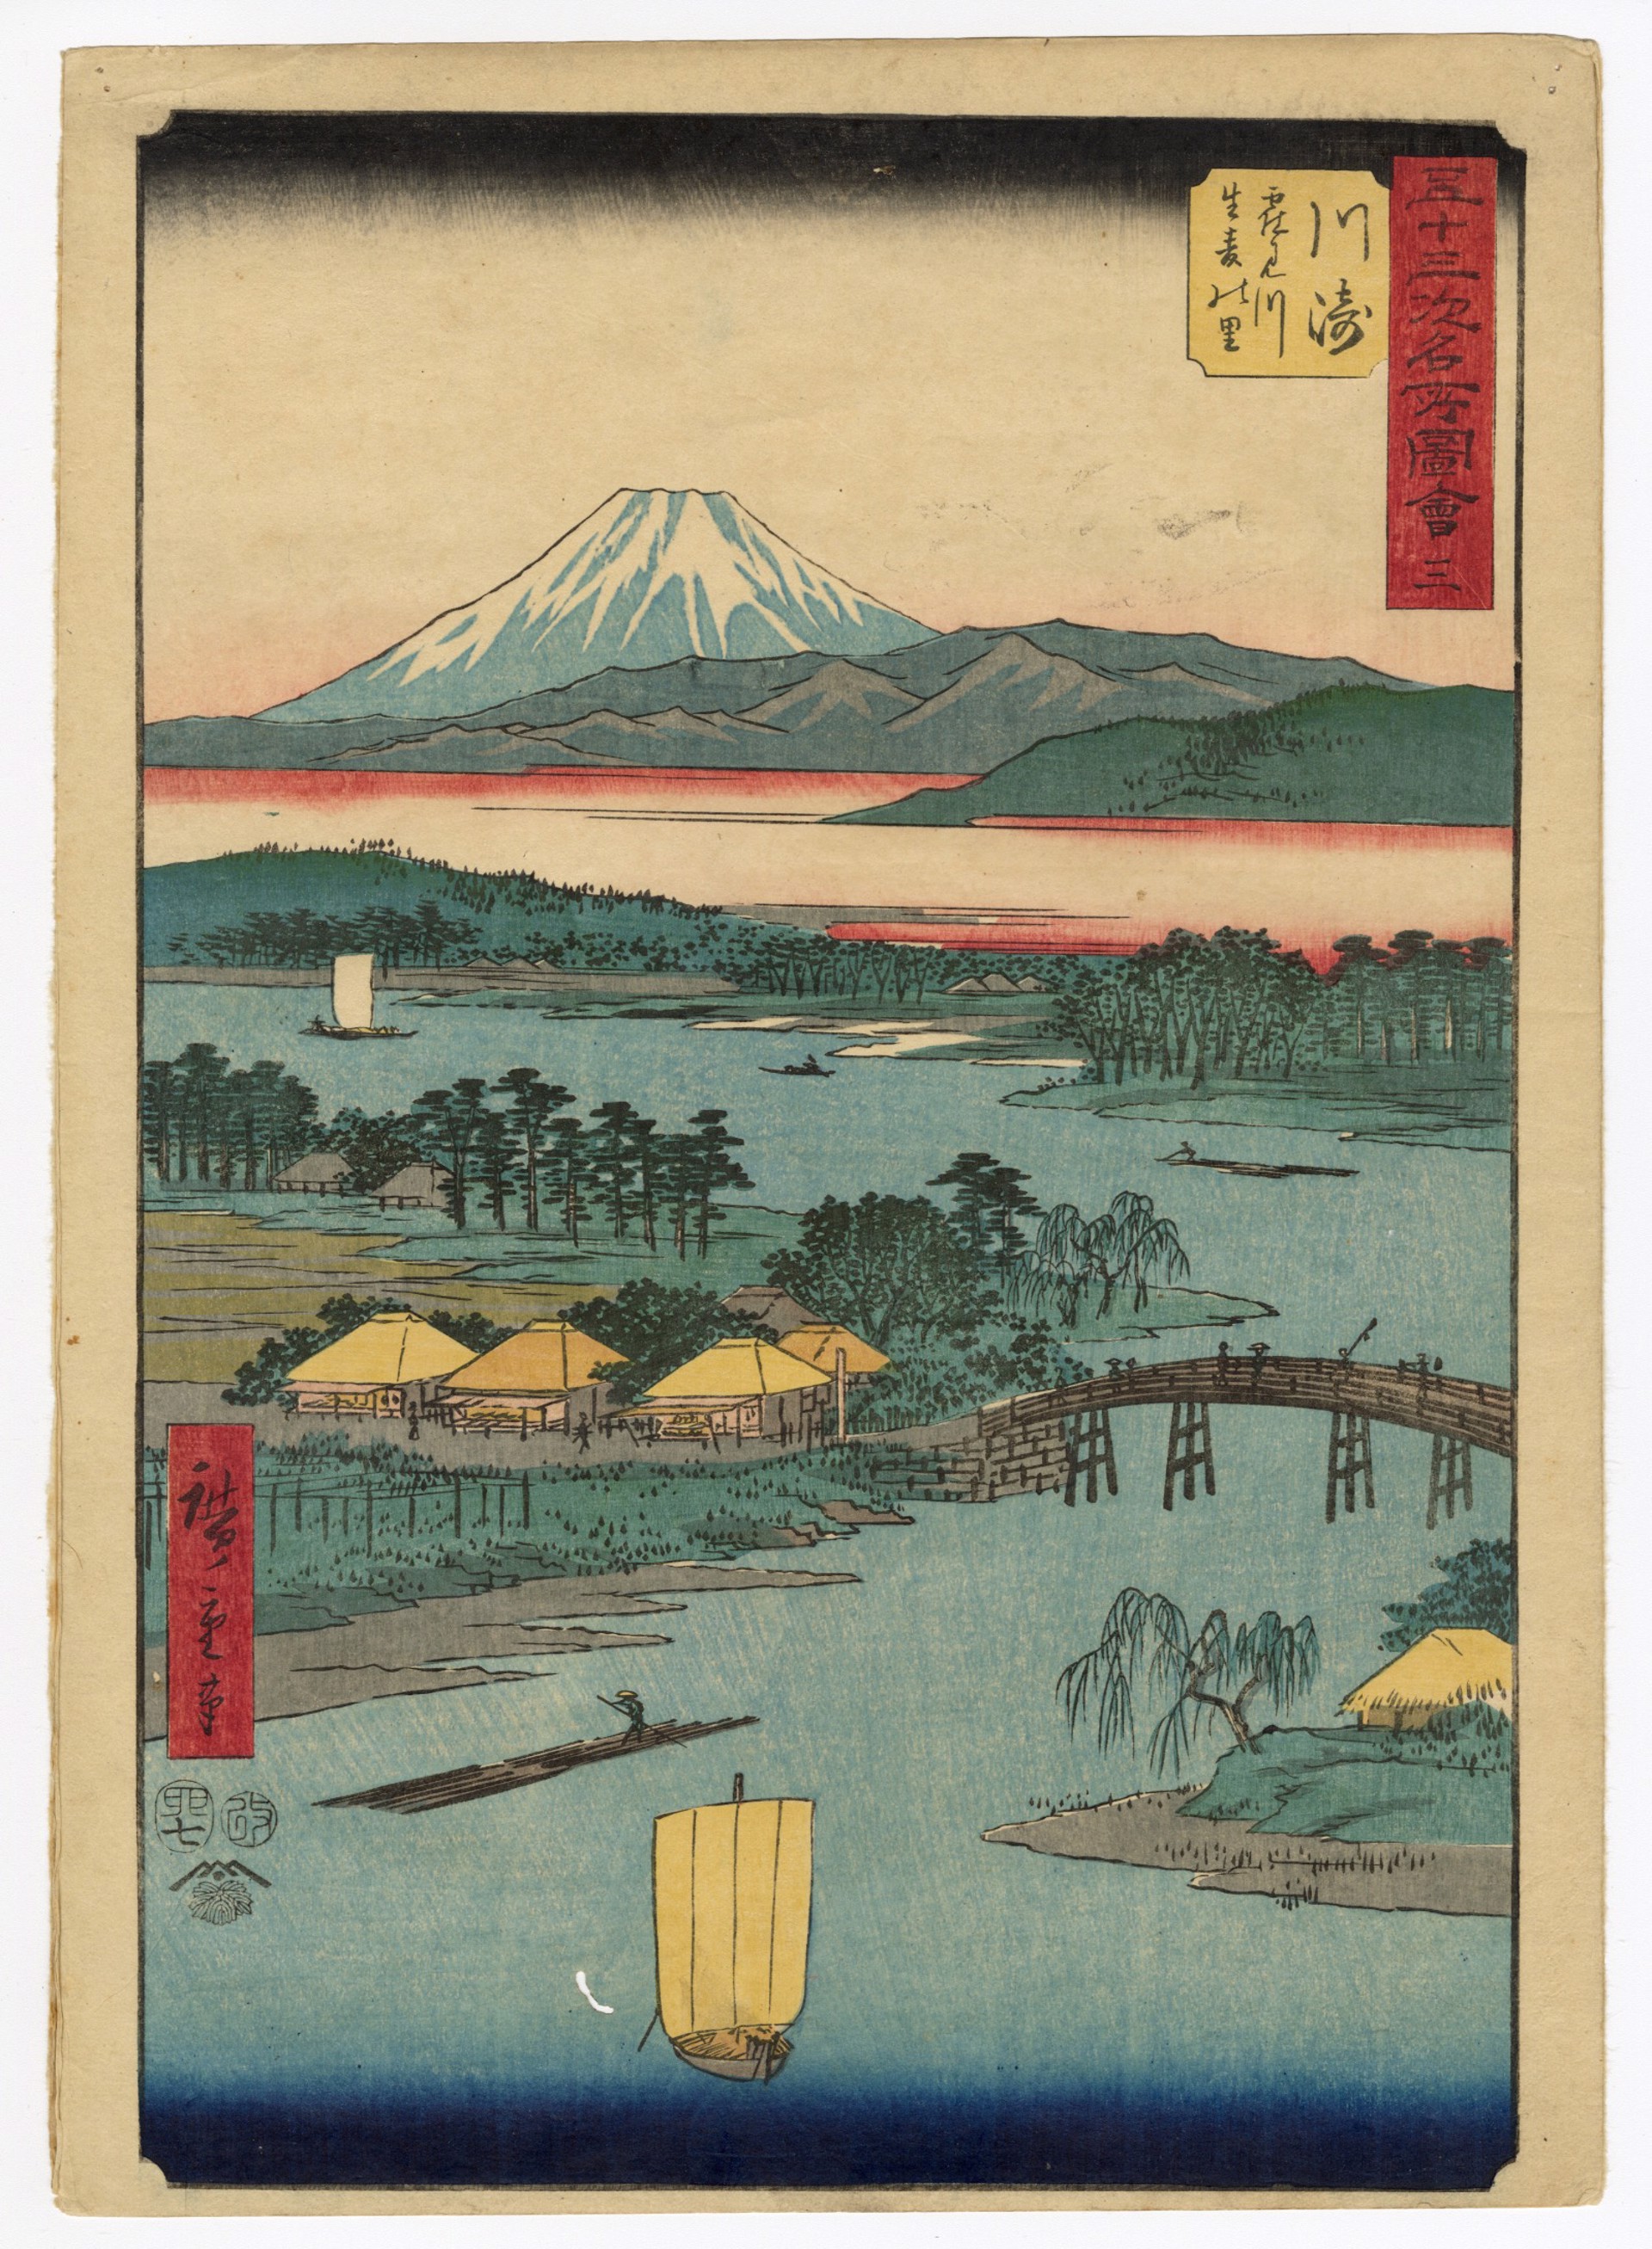 #3 Kawasaki - Tsurumi River and Namamugi Village by Hiroshige